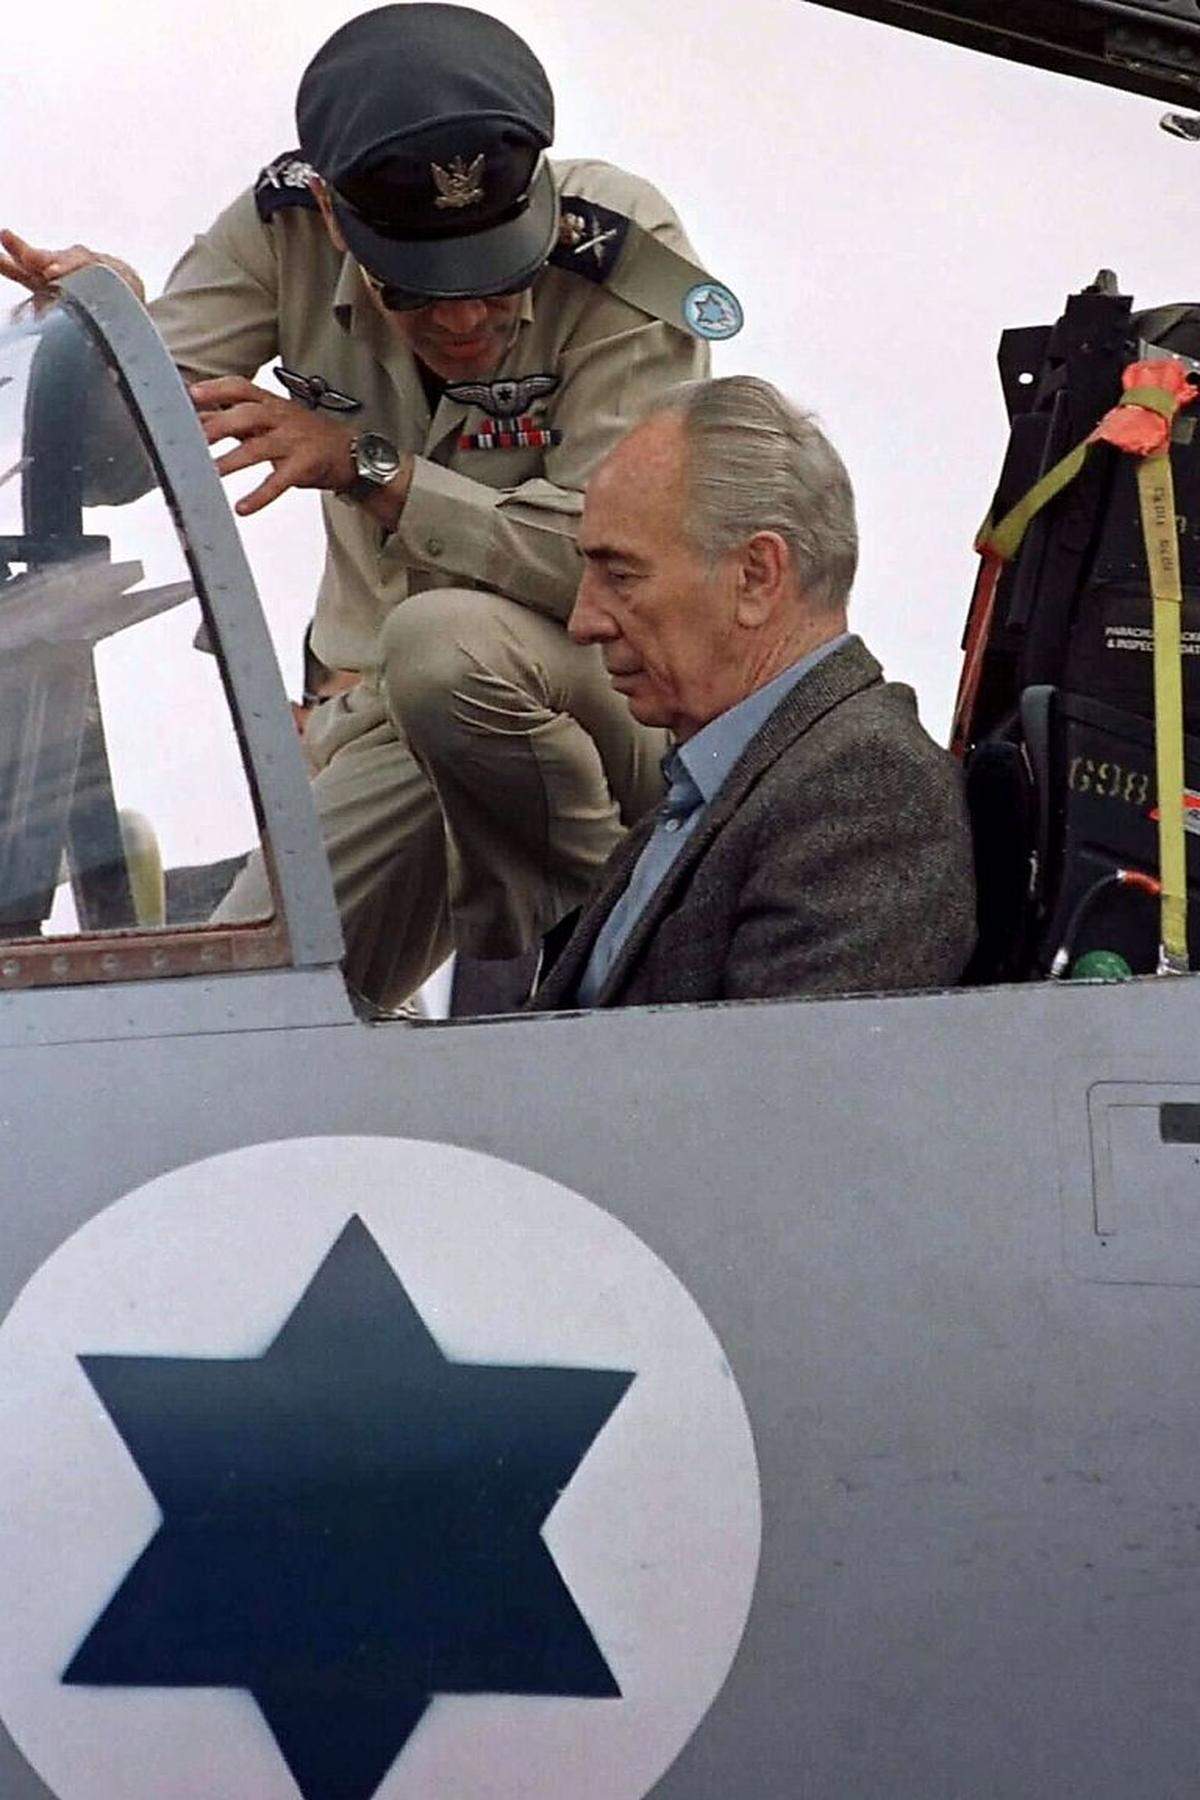 Shimon Peres trat bereits 1947, ein Jahr vor der Staatsgründung Israels, der Hagana bei, aus der später die israelische Armee entstehen sollte. Nach dem Unabhängigkeitskrieg arbeitete er mehrere Jahre für das Verteidigungsministerium. Auch später blieben seine Bande mit der Armee eng, der er auch als Verteidigungsminister vorstand.